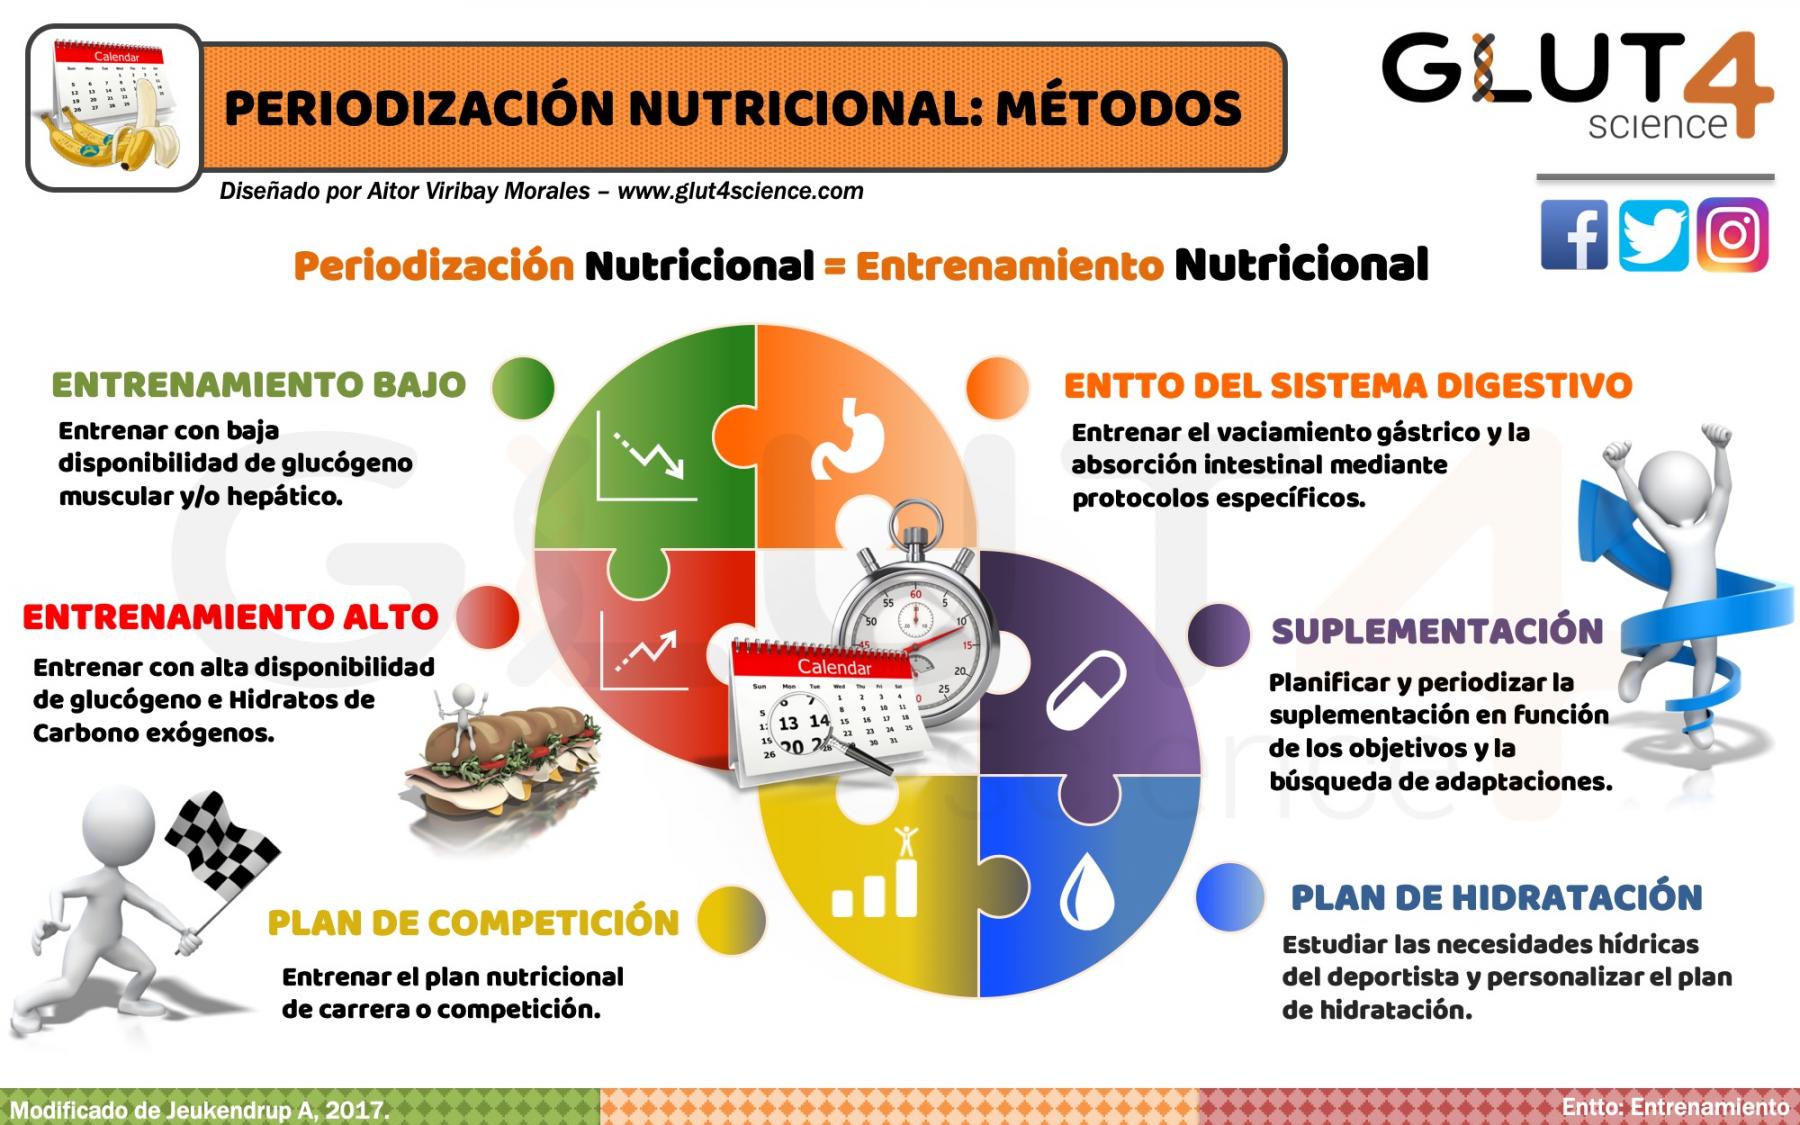 Métodos de Periodización Nutricional